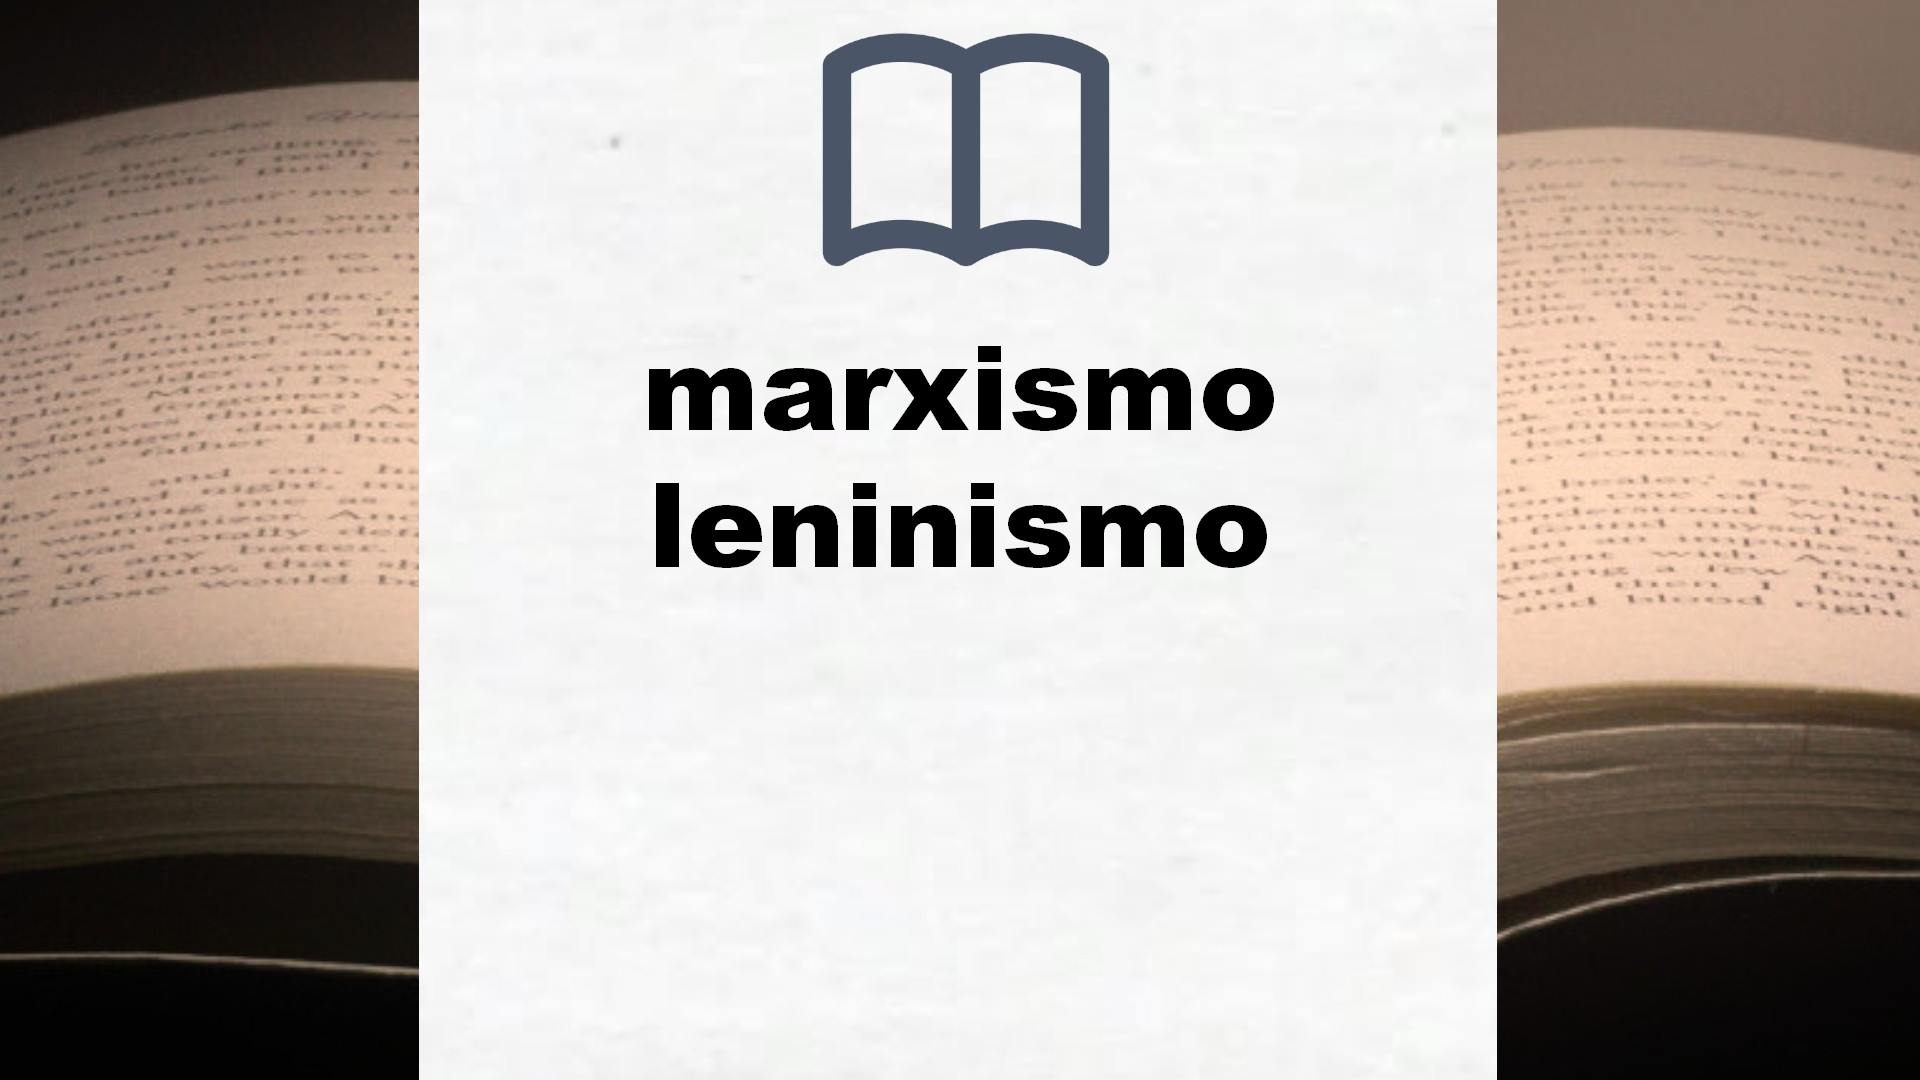 Libros sobre marxismo leninismo